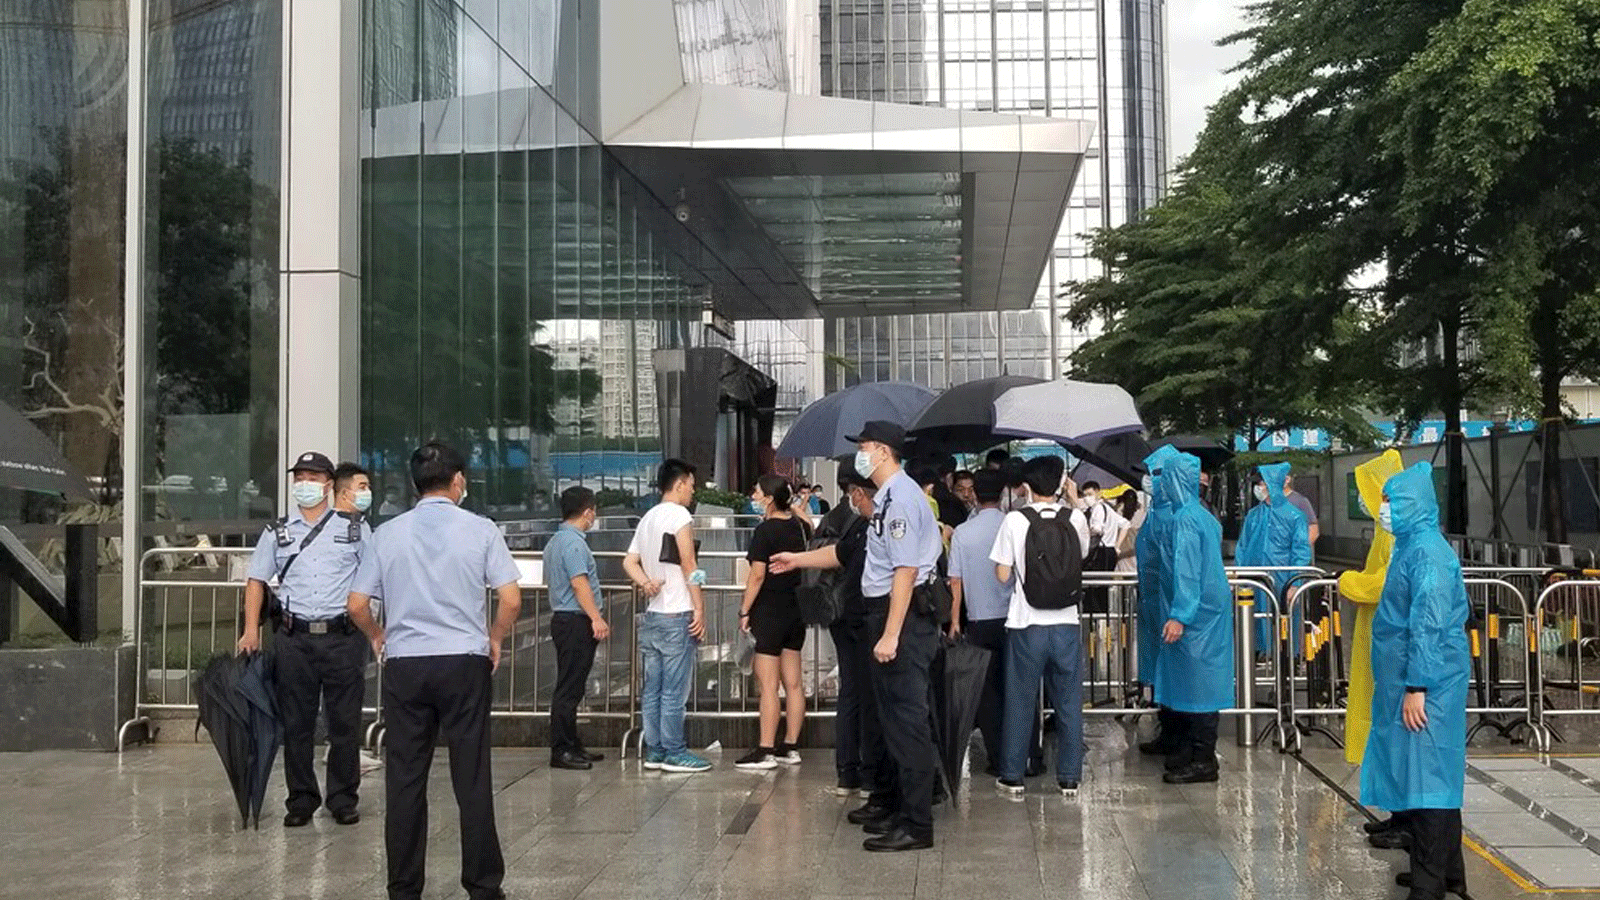 الشرطة وحراس الأمن يقفون أمام المدخل المحصن لمقر مجموعة إيفرغراند الصينية في شنتشن.